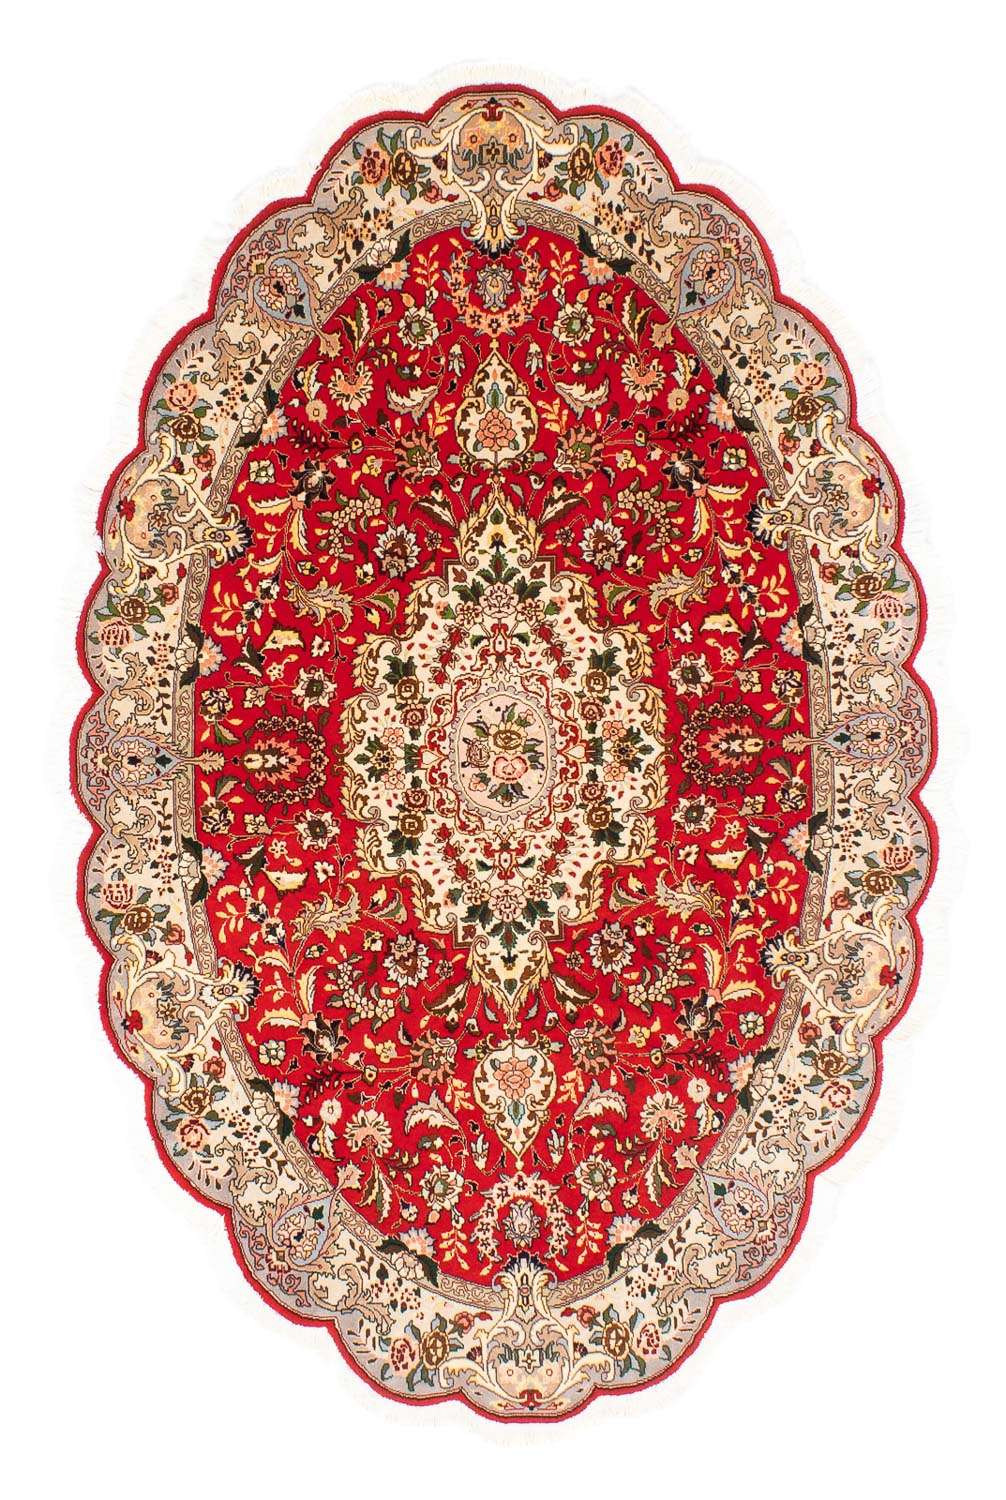 Dywan perski - Tabriz - Królewski owalny  - 200 x 130 cm - czerwony